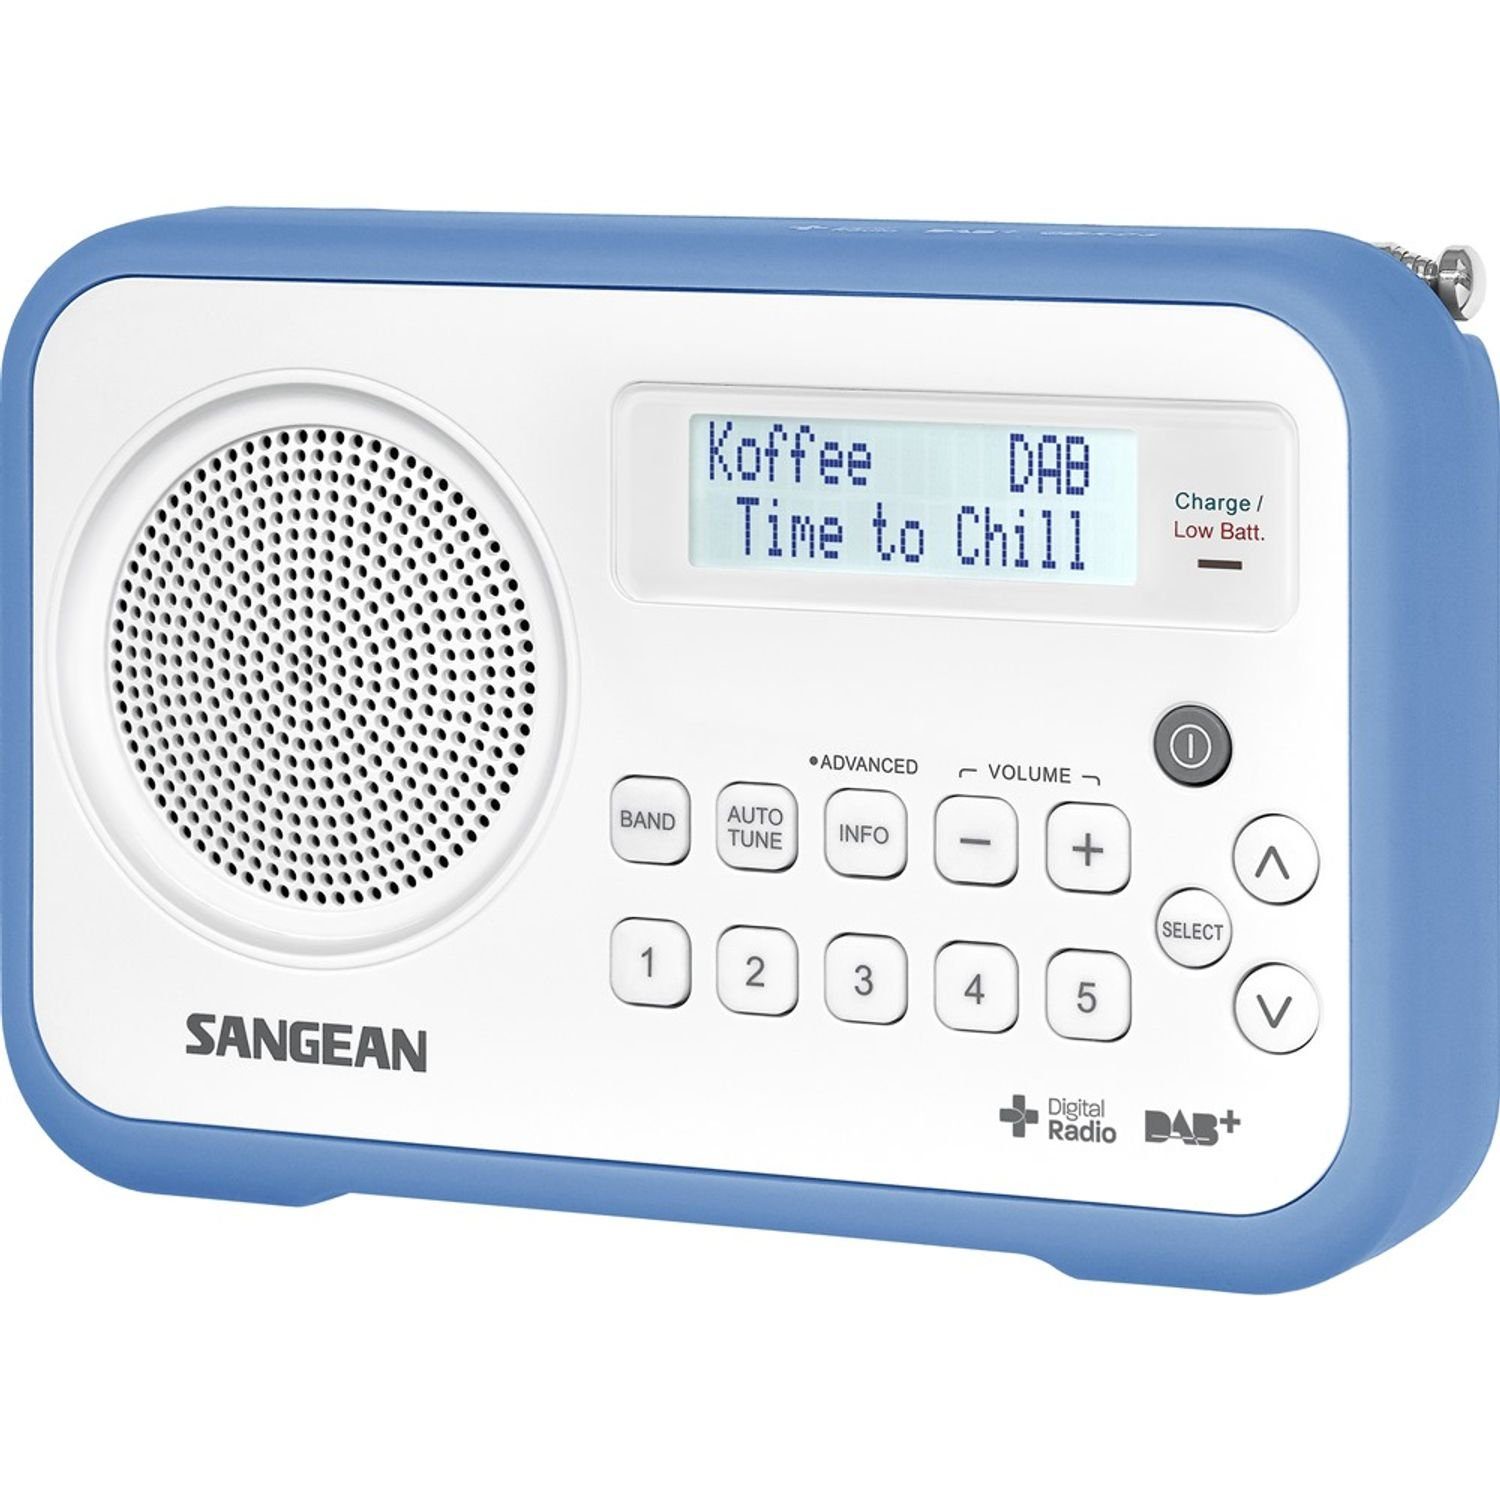 (DAB) (DAB) Digitalempfänger weiß/blau / Digitalradio DAB+ FM-RDS Sangean DPR-67